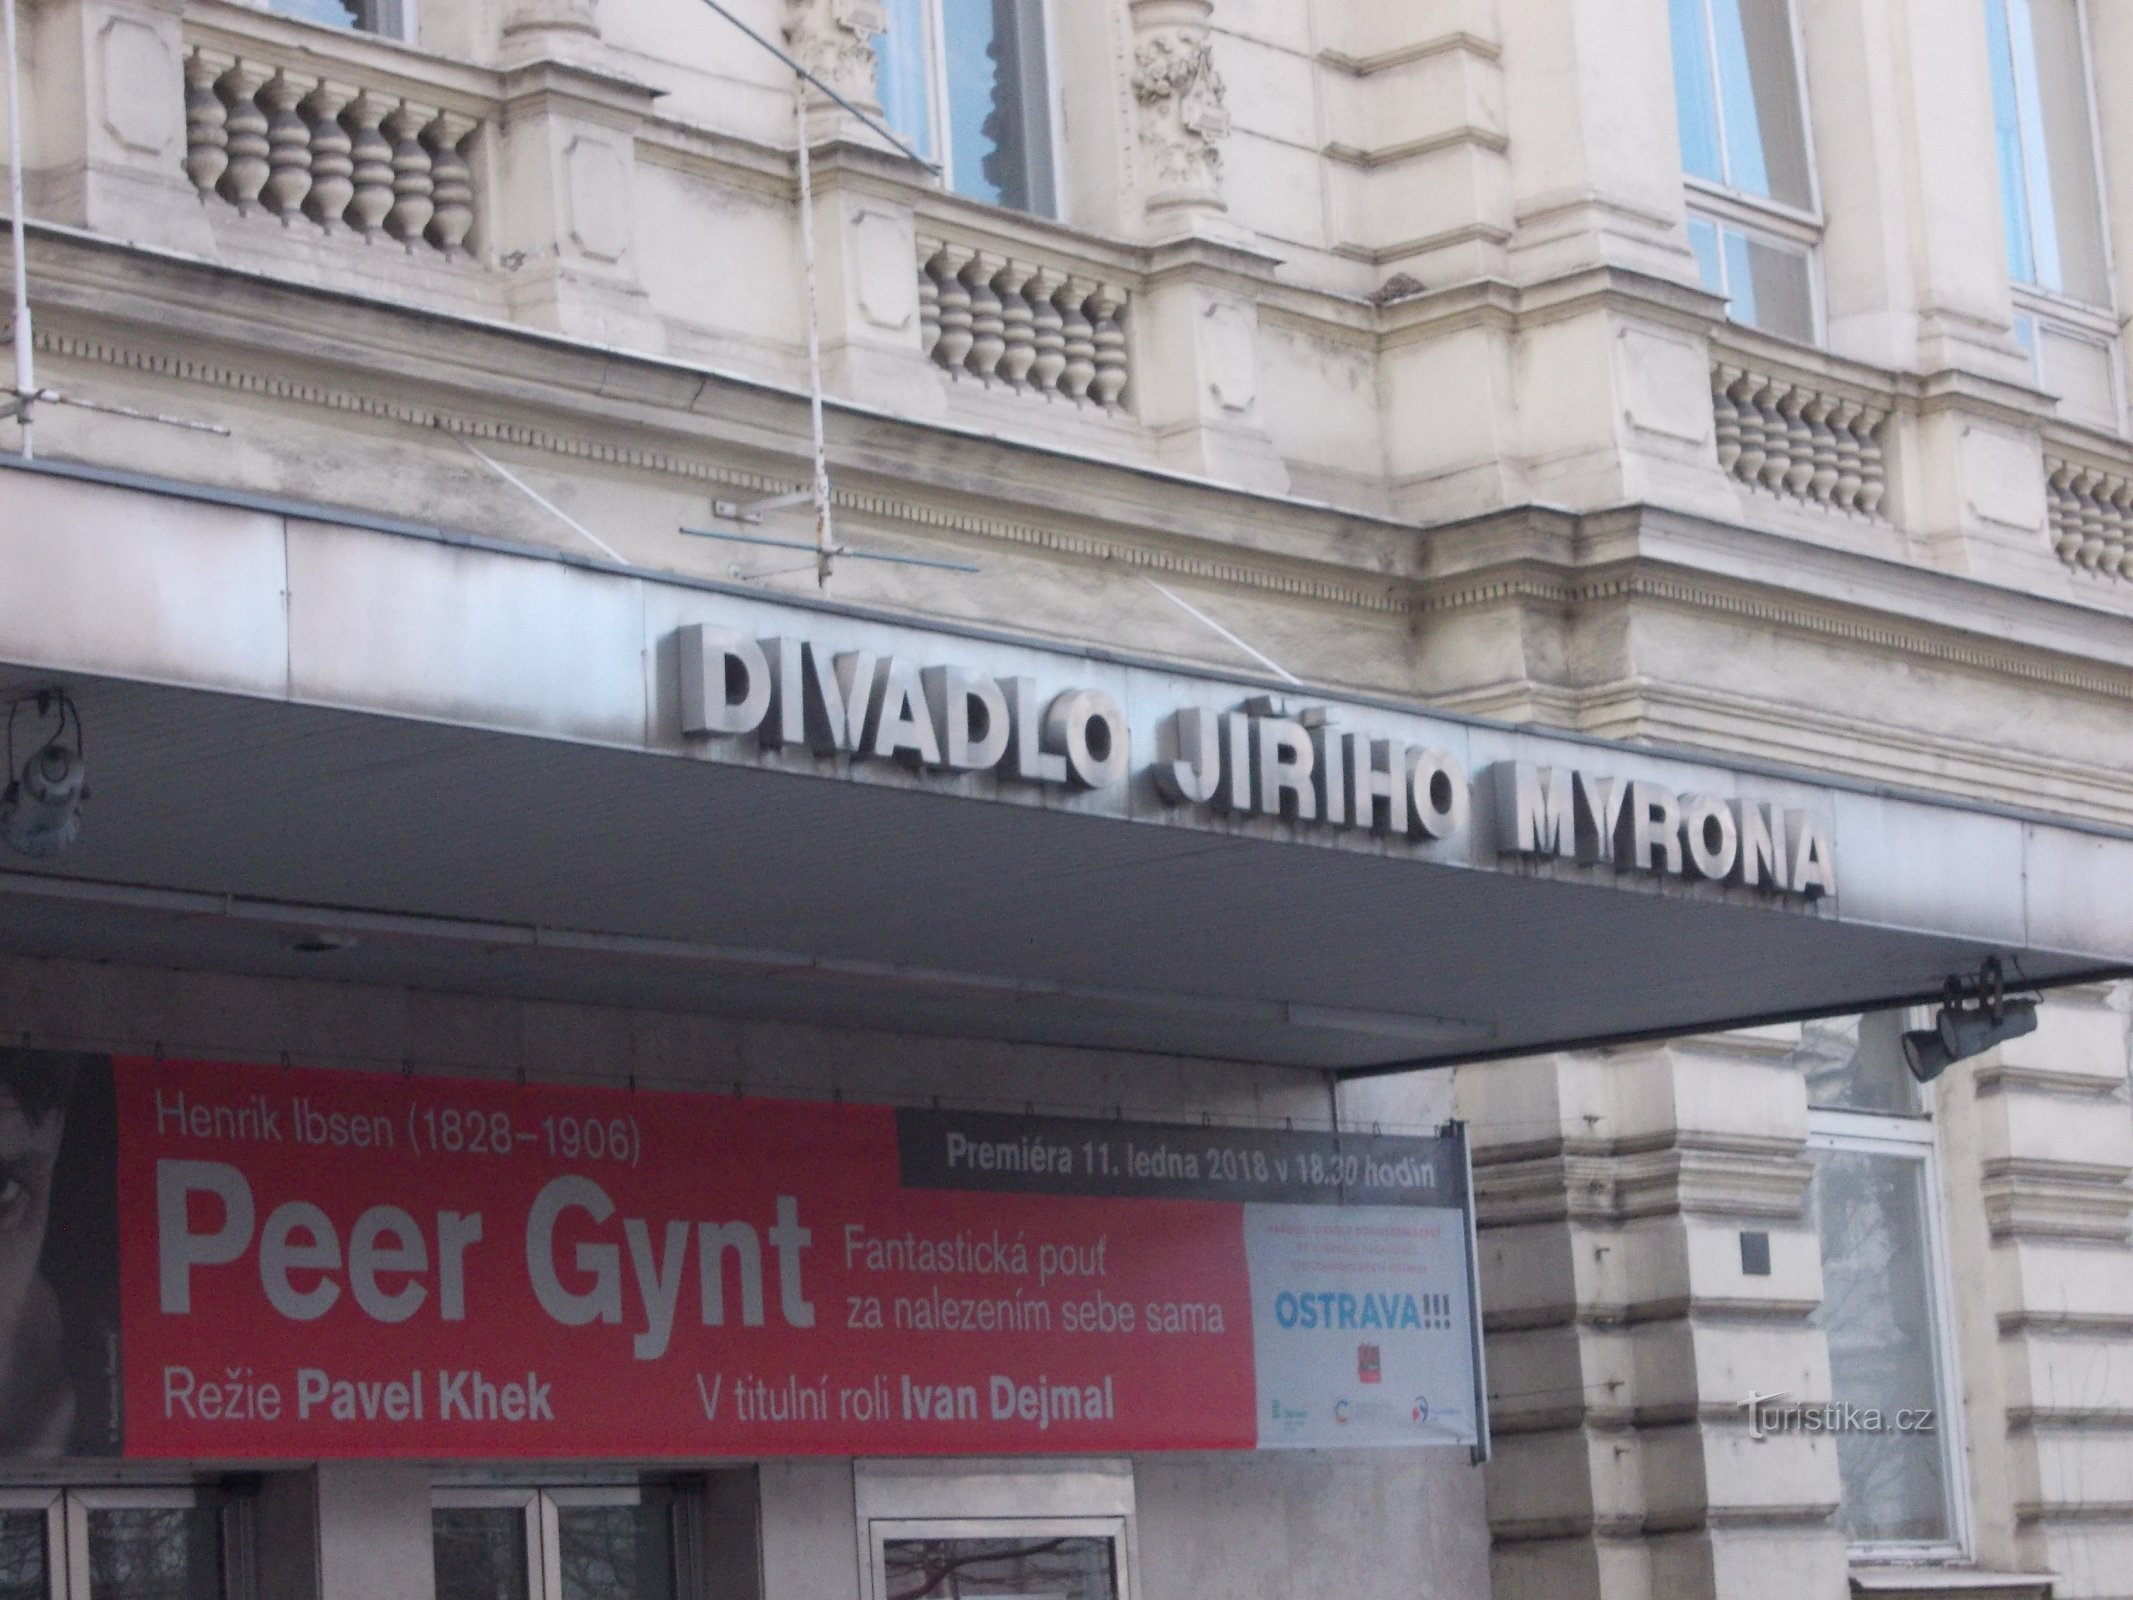 Il Teatro Jiří Myron dalla fine del 19° secolo ha subito diversi lavori di ristrutturazione fino ad oggi